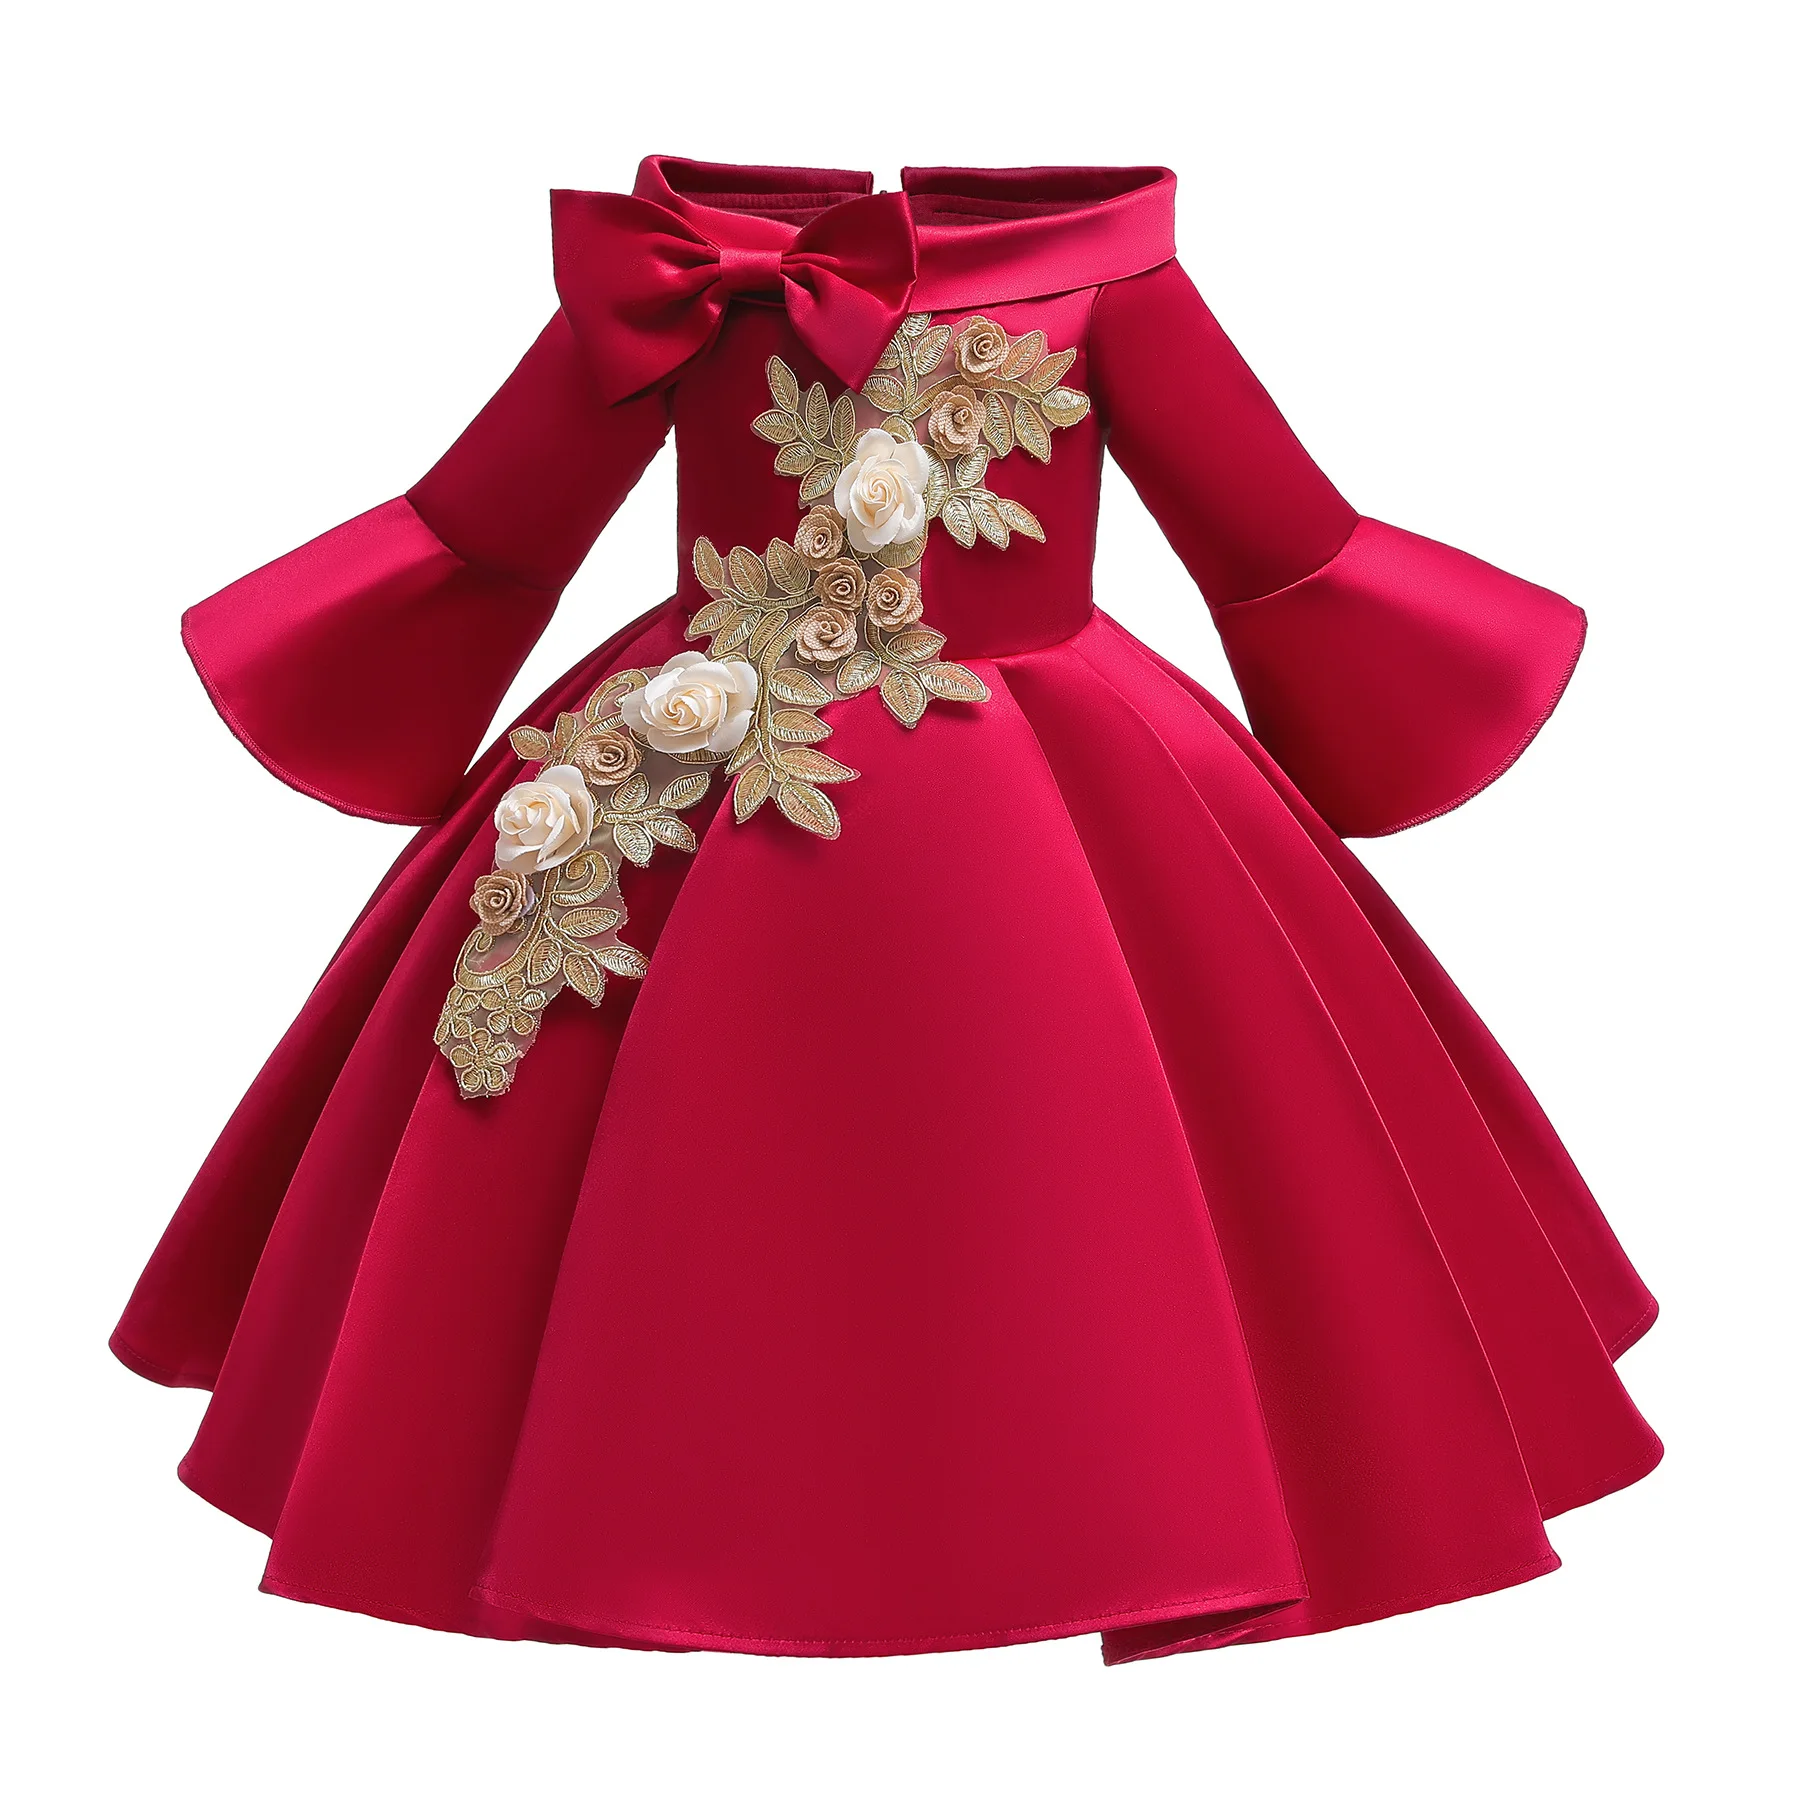 Зимнее платье для девочки;новогодний костюм для девочки;нарядное платье для девочки праздничное платье принцессы с длинными рукавами и вышивкой для девочек ;карнавальные костюмы для девочек;детские платья;2,10 лет - Цвет: Red